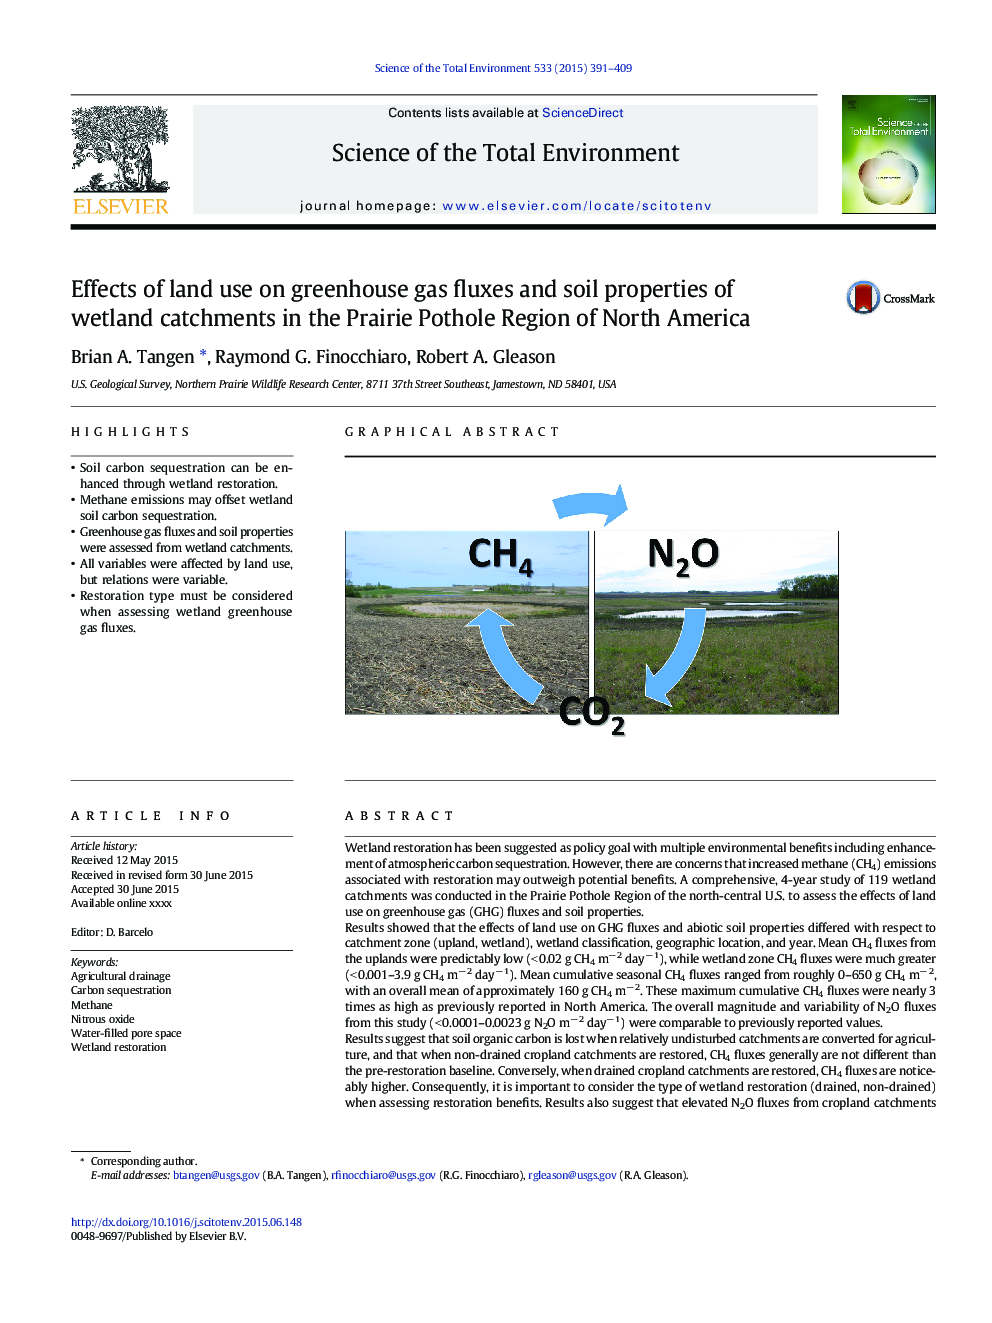 تأثیر استفاده از زمین در جابجایی گازهای گلخانه ای و ویژگی های خاک های حوزه تالاب در منطقه پترولیتی پریلی شمال امریکا 